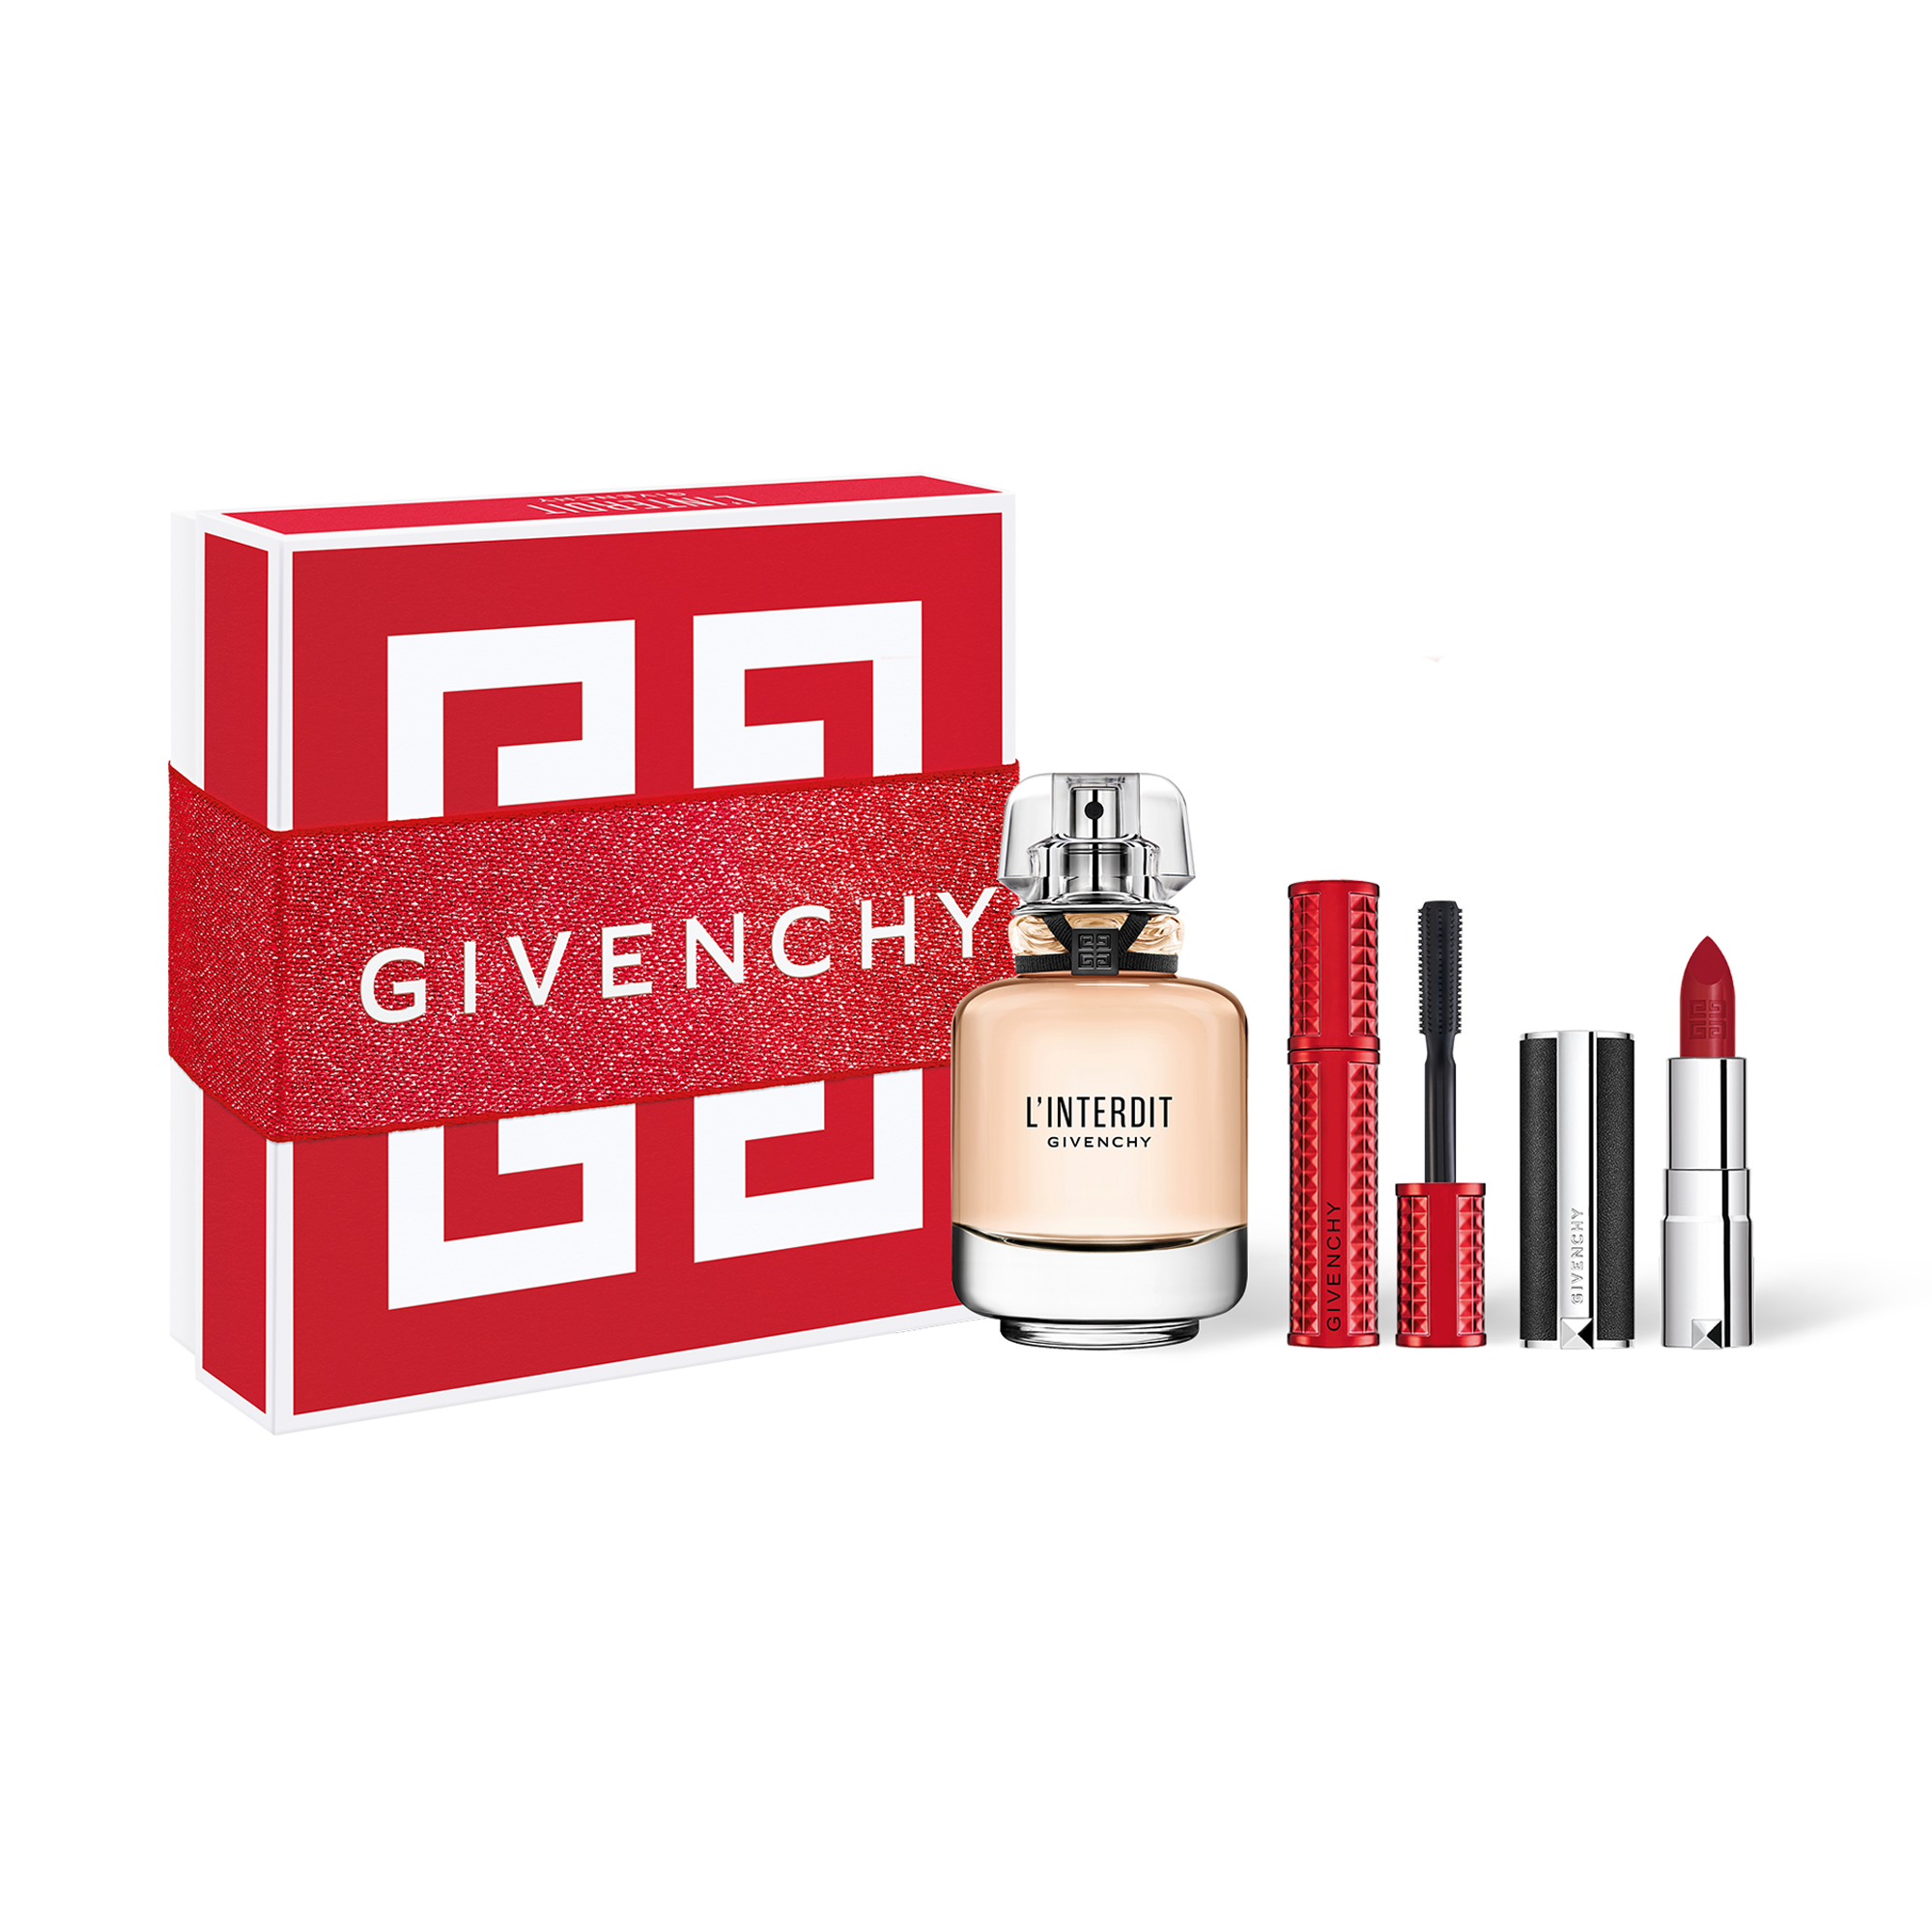 L'INTERDIT | GIVENCHY BEAUTY - 50ml Eau de parfum, mini Le Rouge Lipstick  #333 & mini Volume Disturbia Mascara #01 | Givenchy Beauty